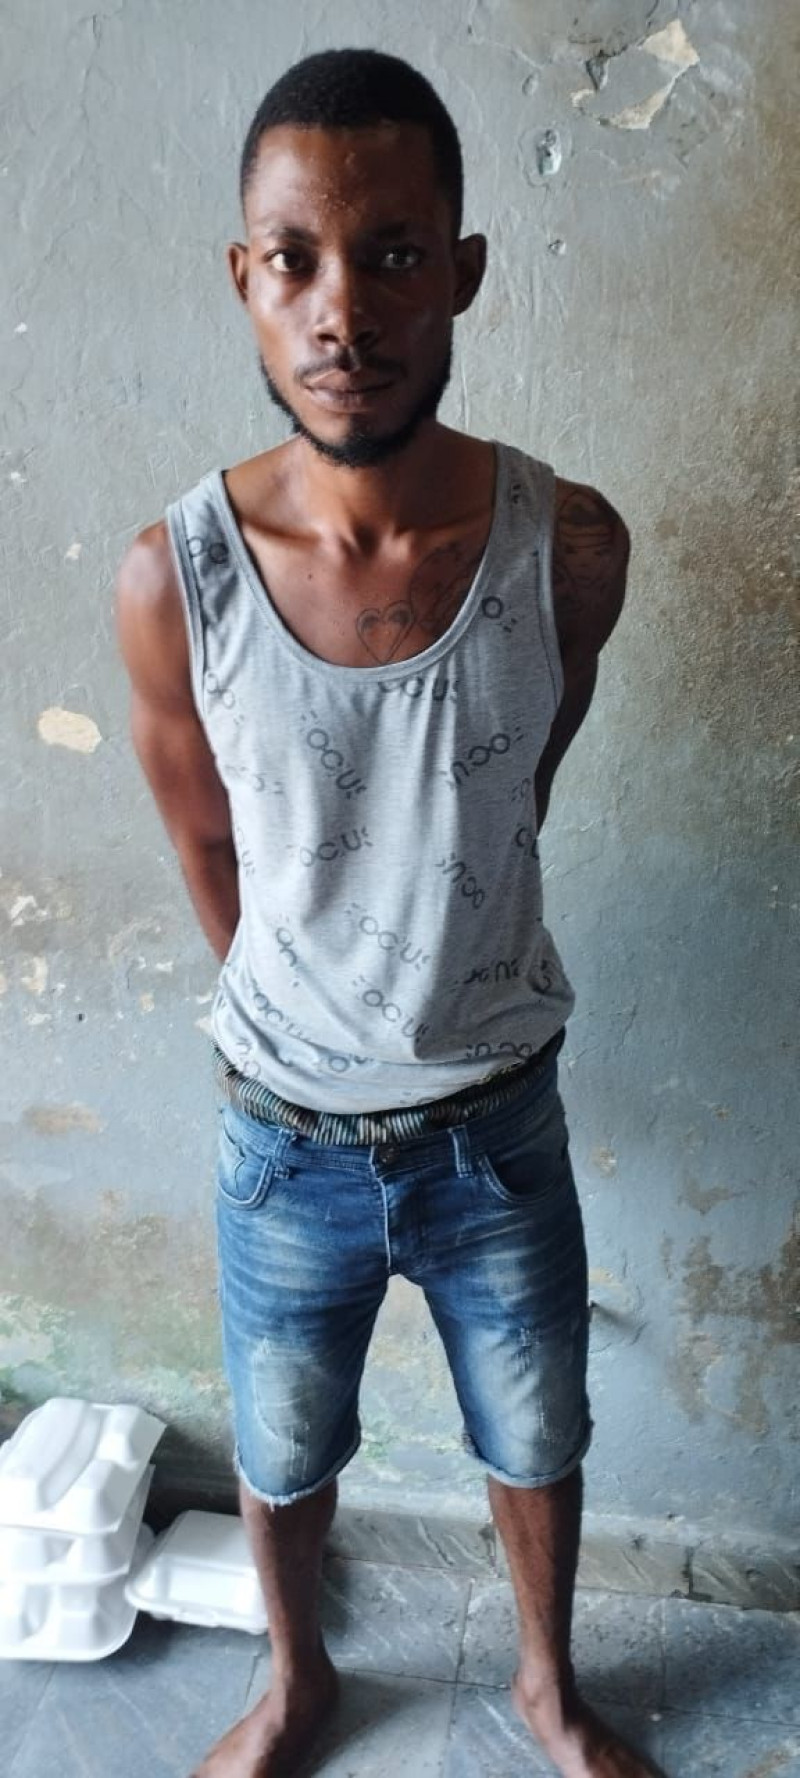 Yeye, el presunto miembro de la banda haitiana 5 Segundos arrestado en República Dominicana